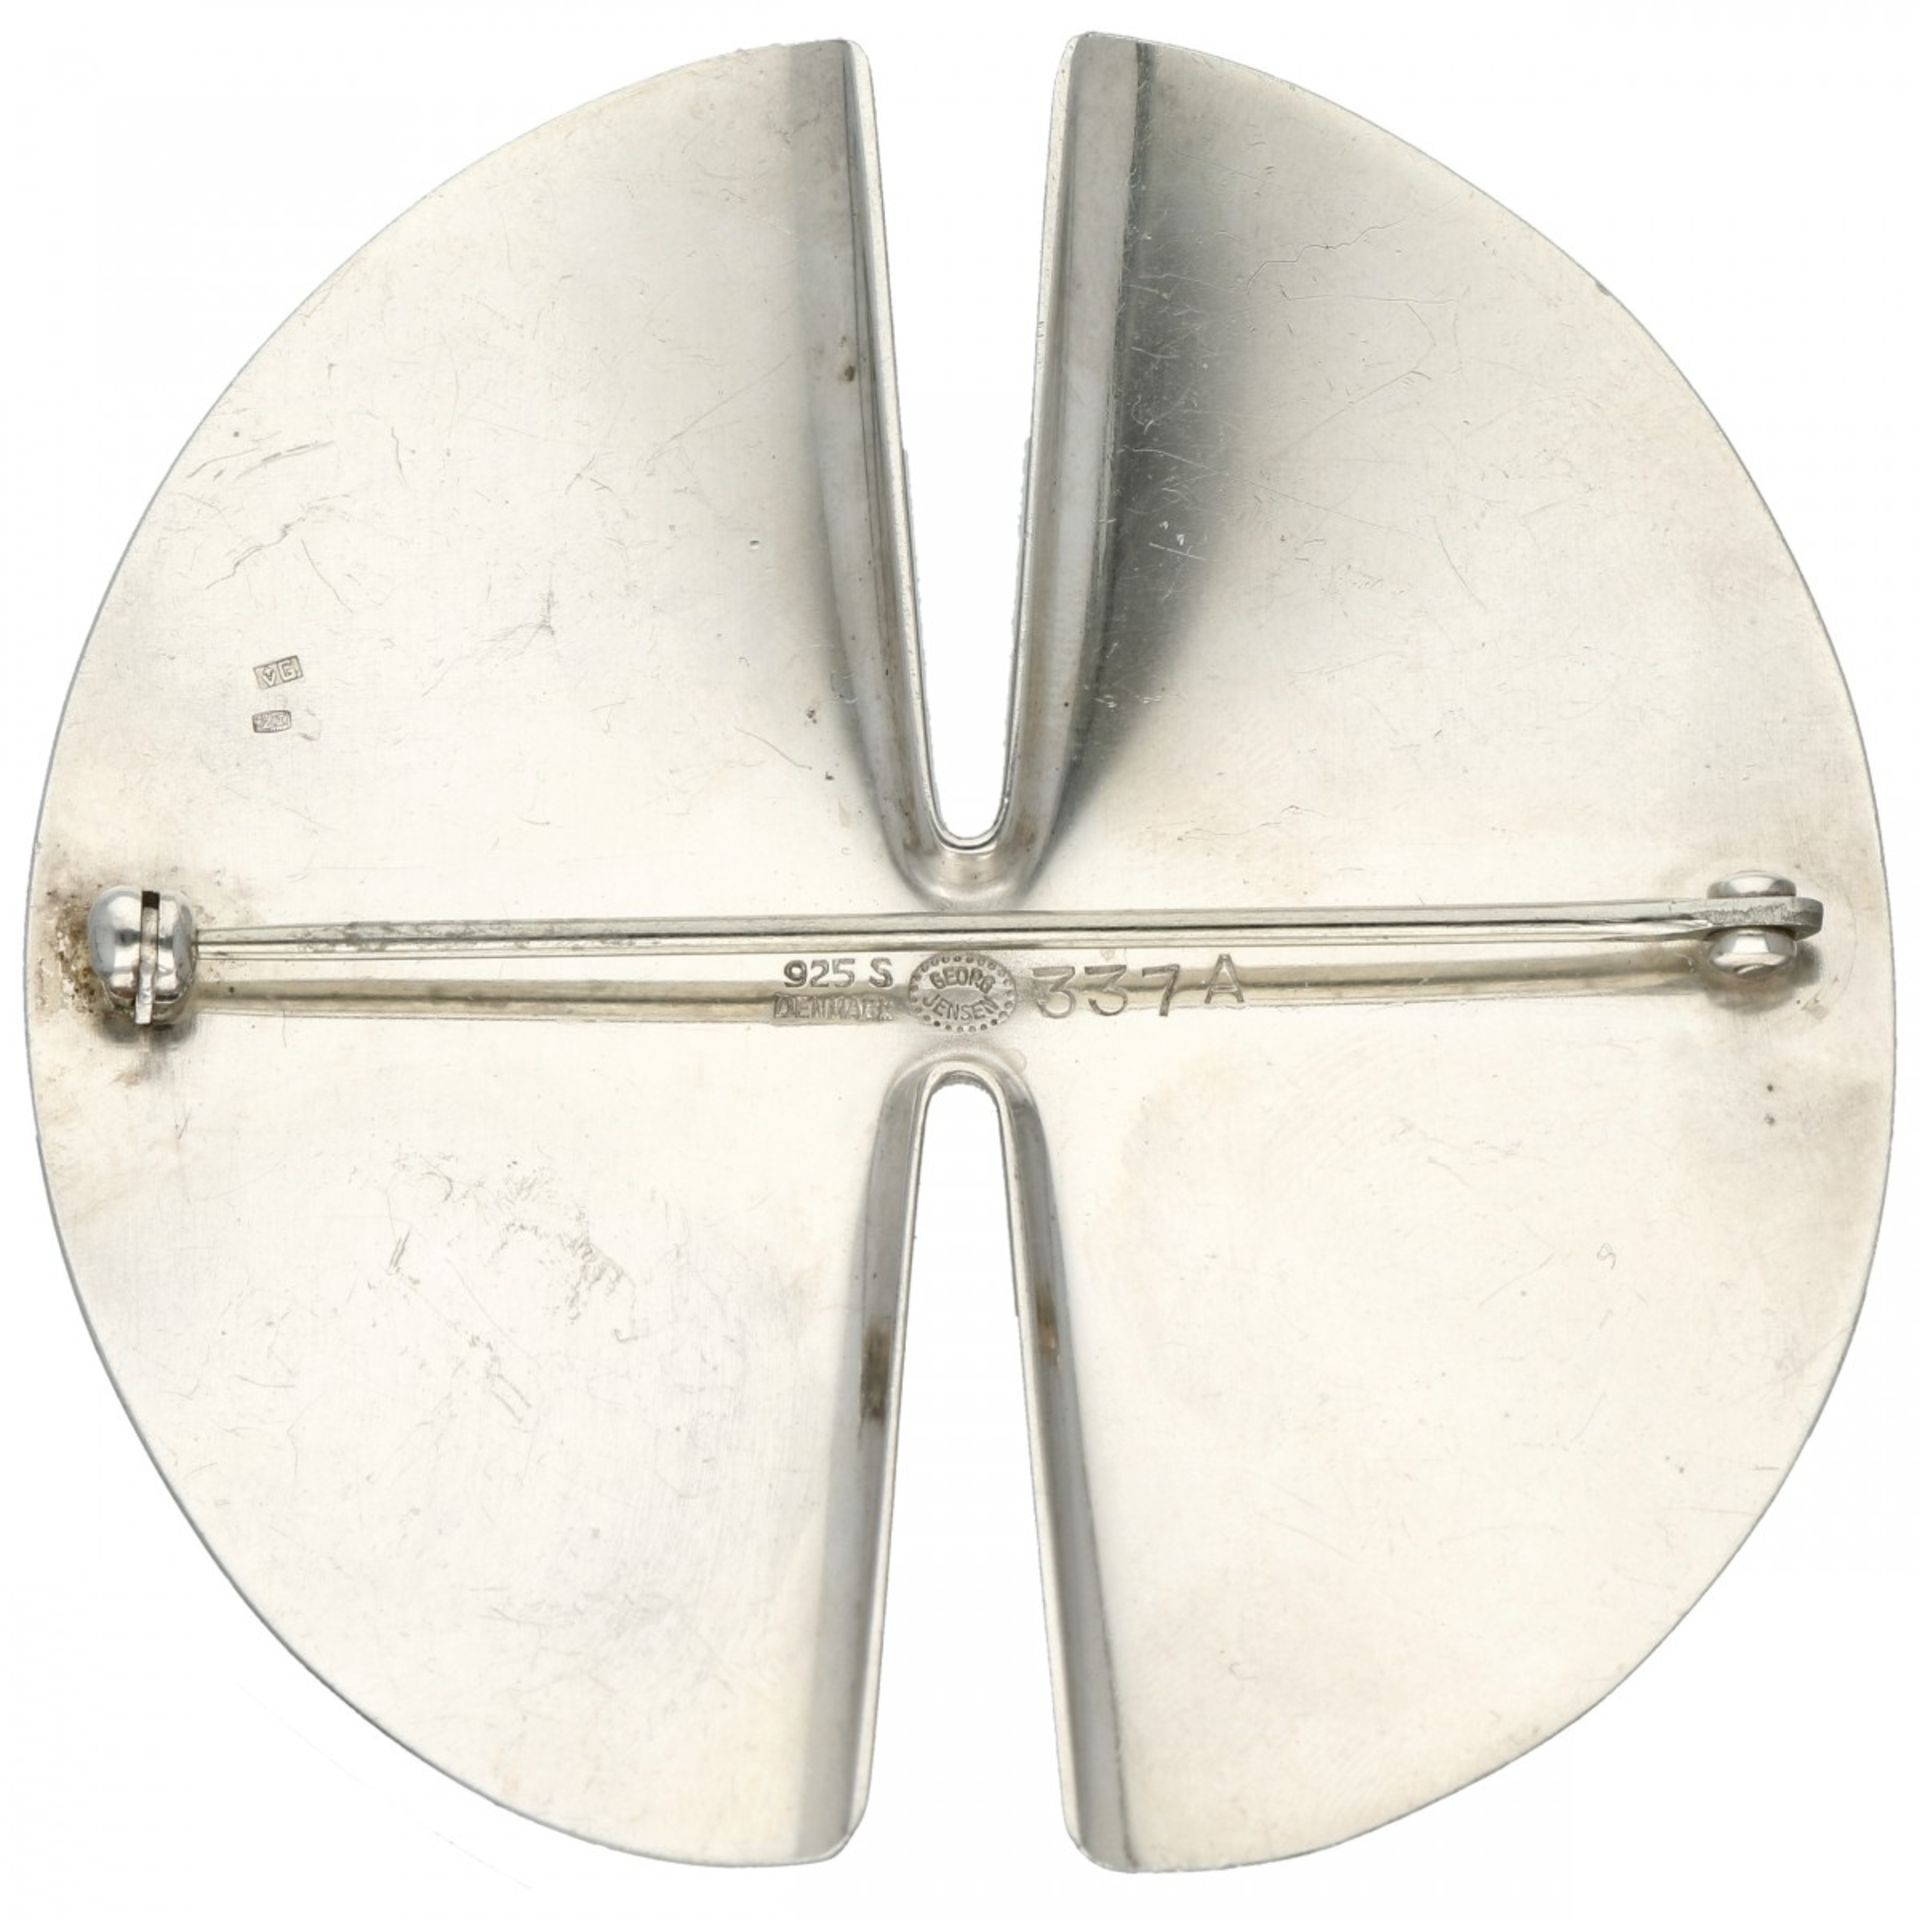 Silver modernist Georg Jensen no.337A brooch - 925/1000. - Bild 2 aus 3